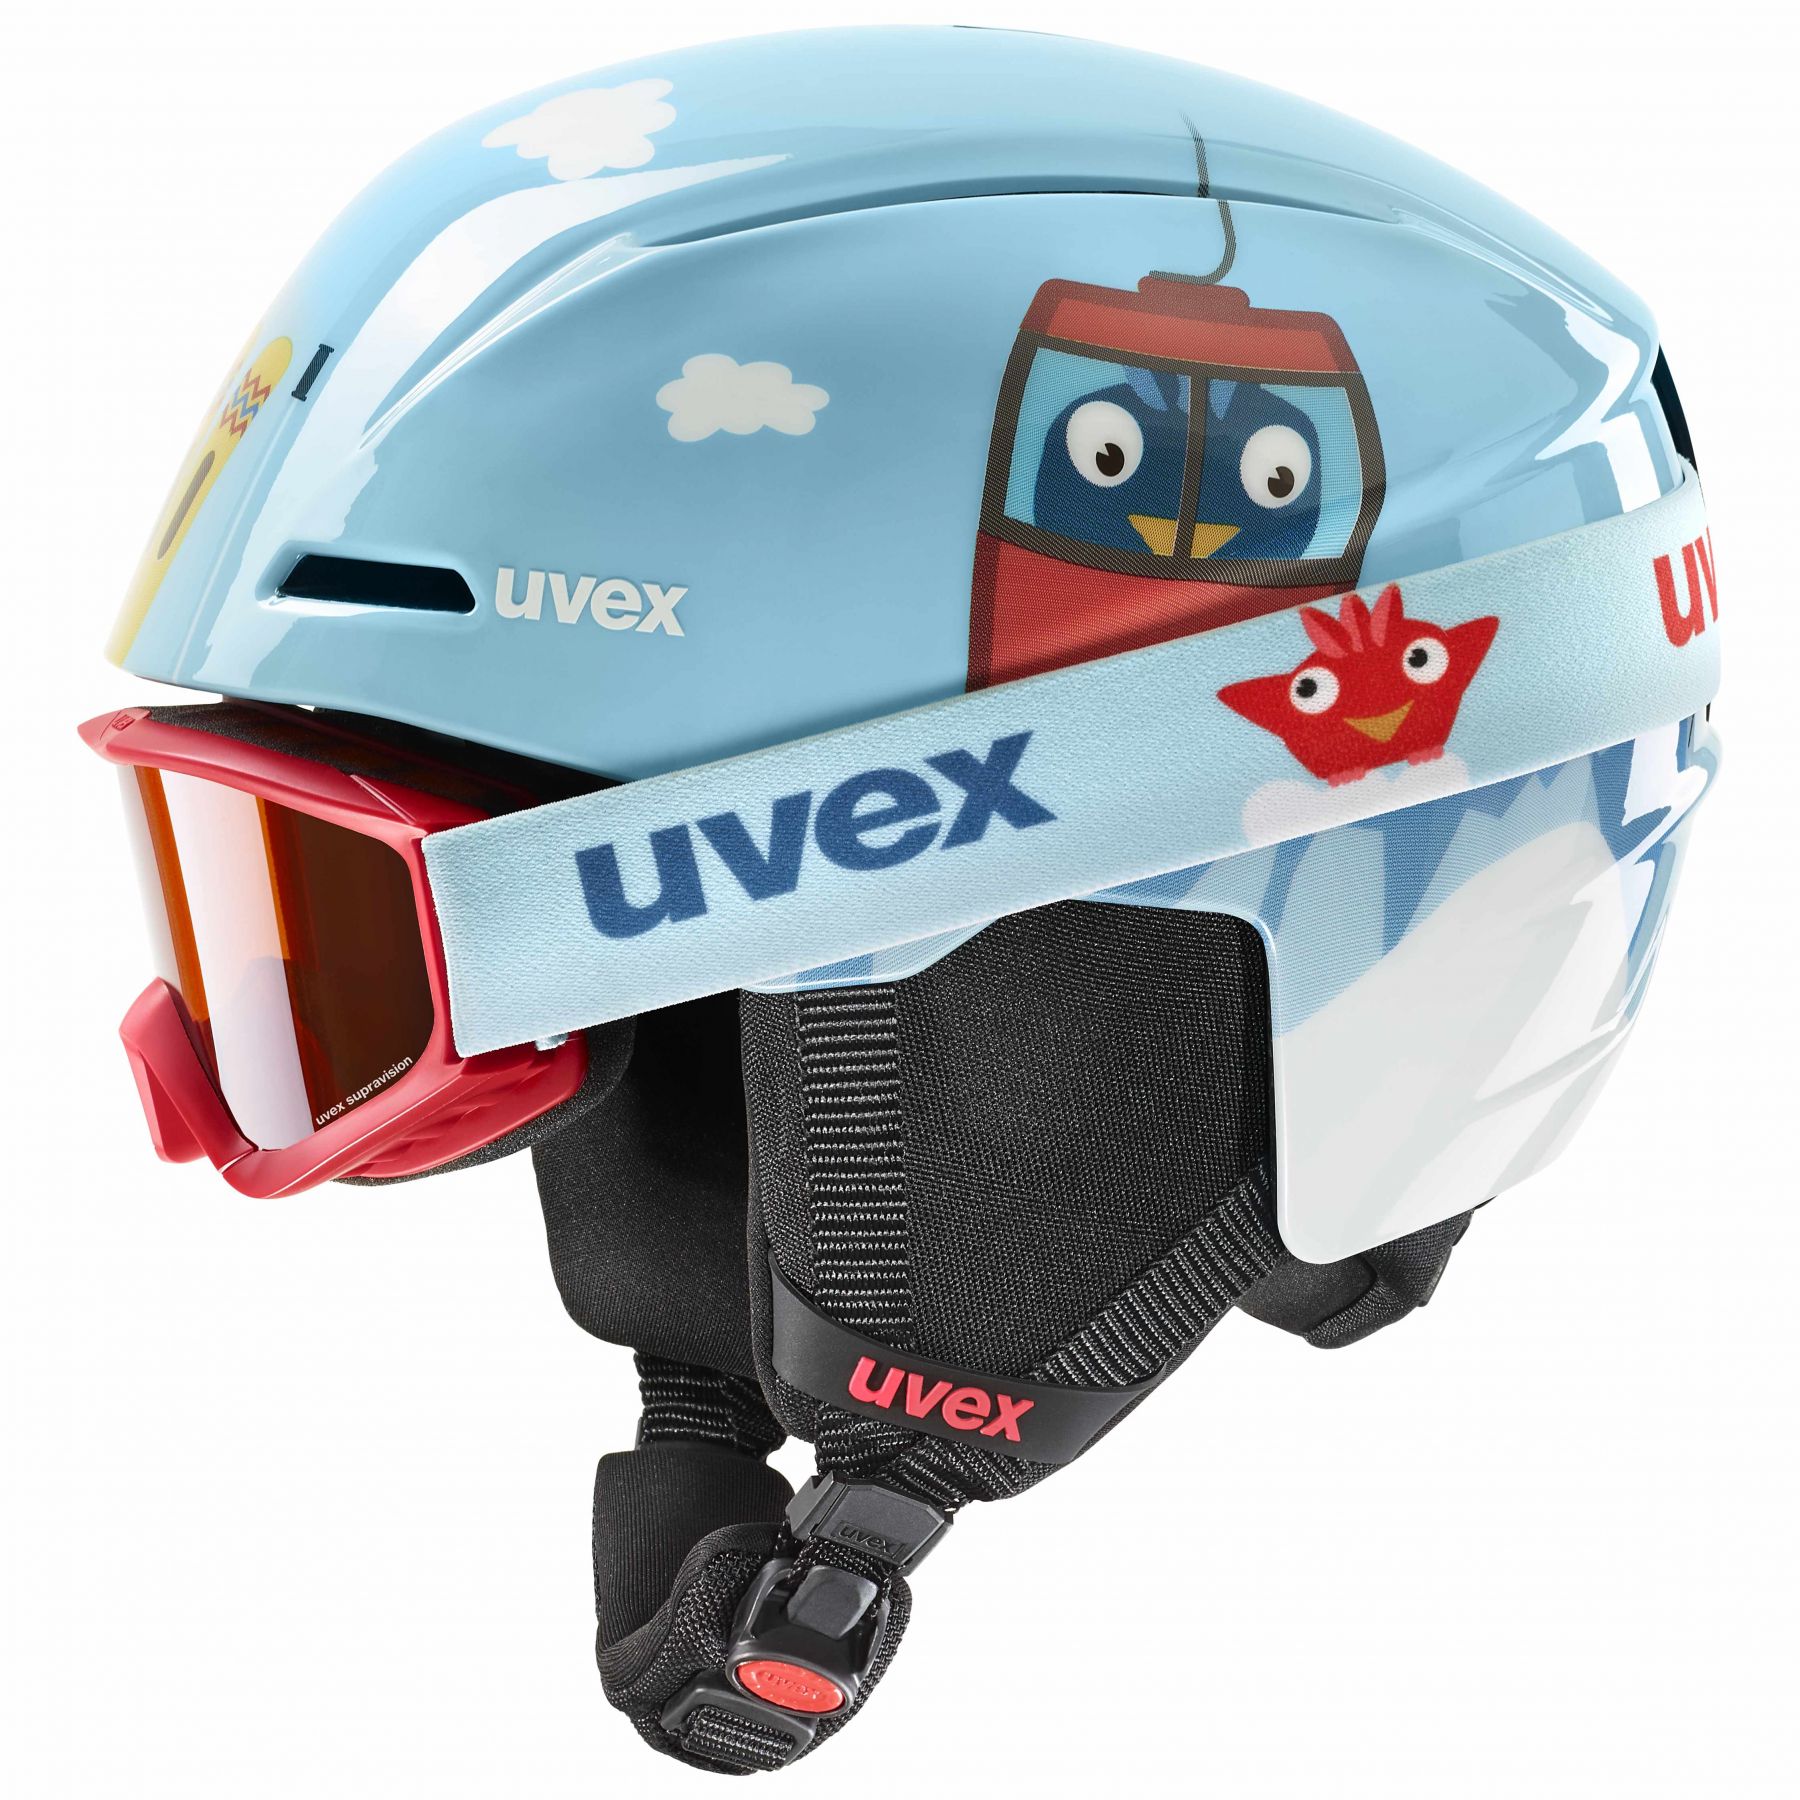 Billede af Uvex Viti Set, skihjelm + skibriller, junior, lyseblå